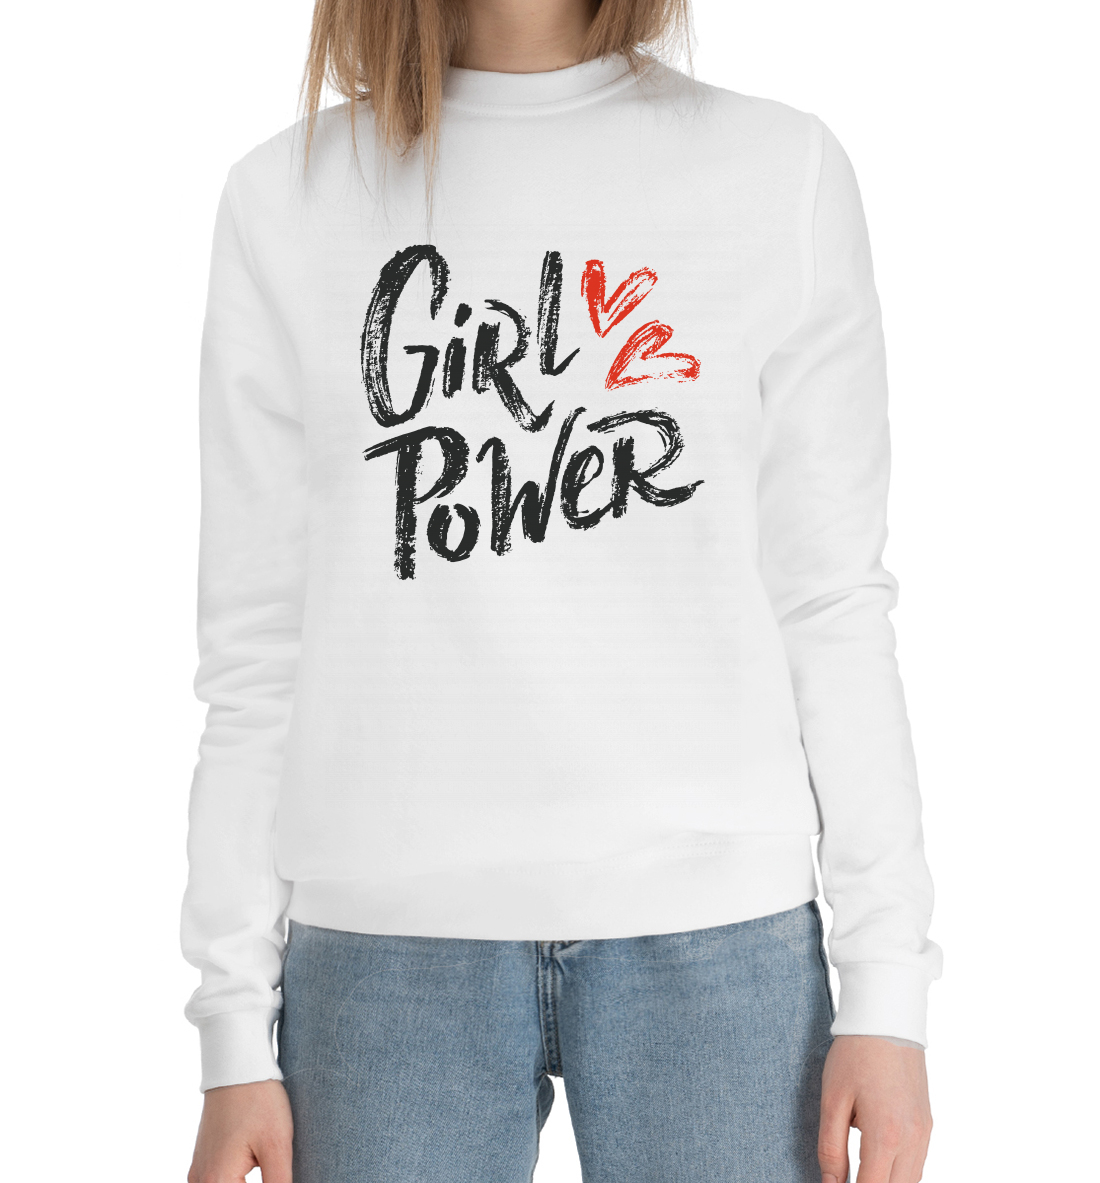 Женский Хлопковый свитшот с принтом Girl power, артикул MRT-399005-hsw-1mp